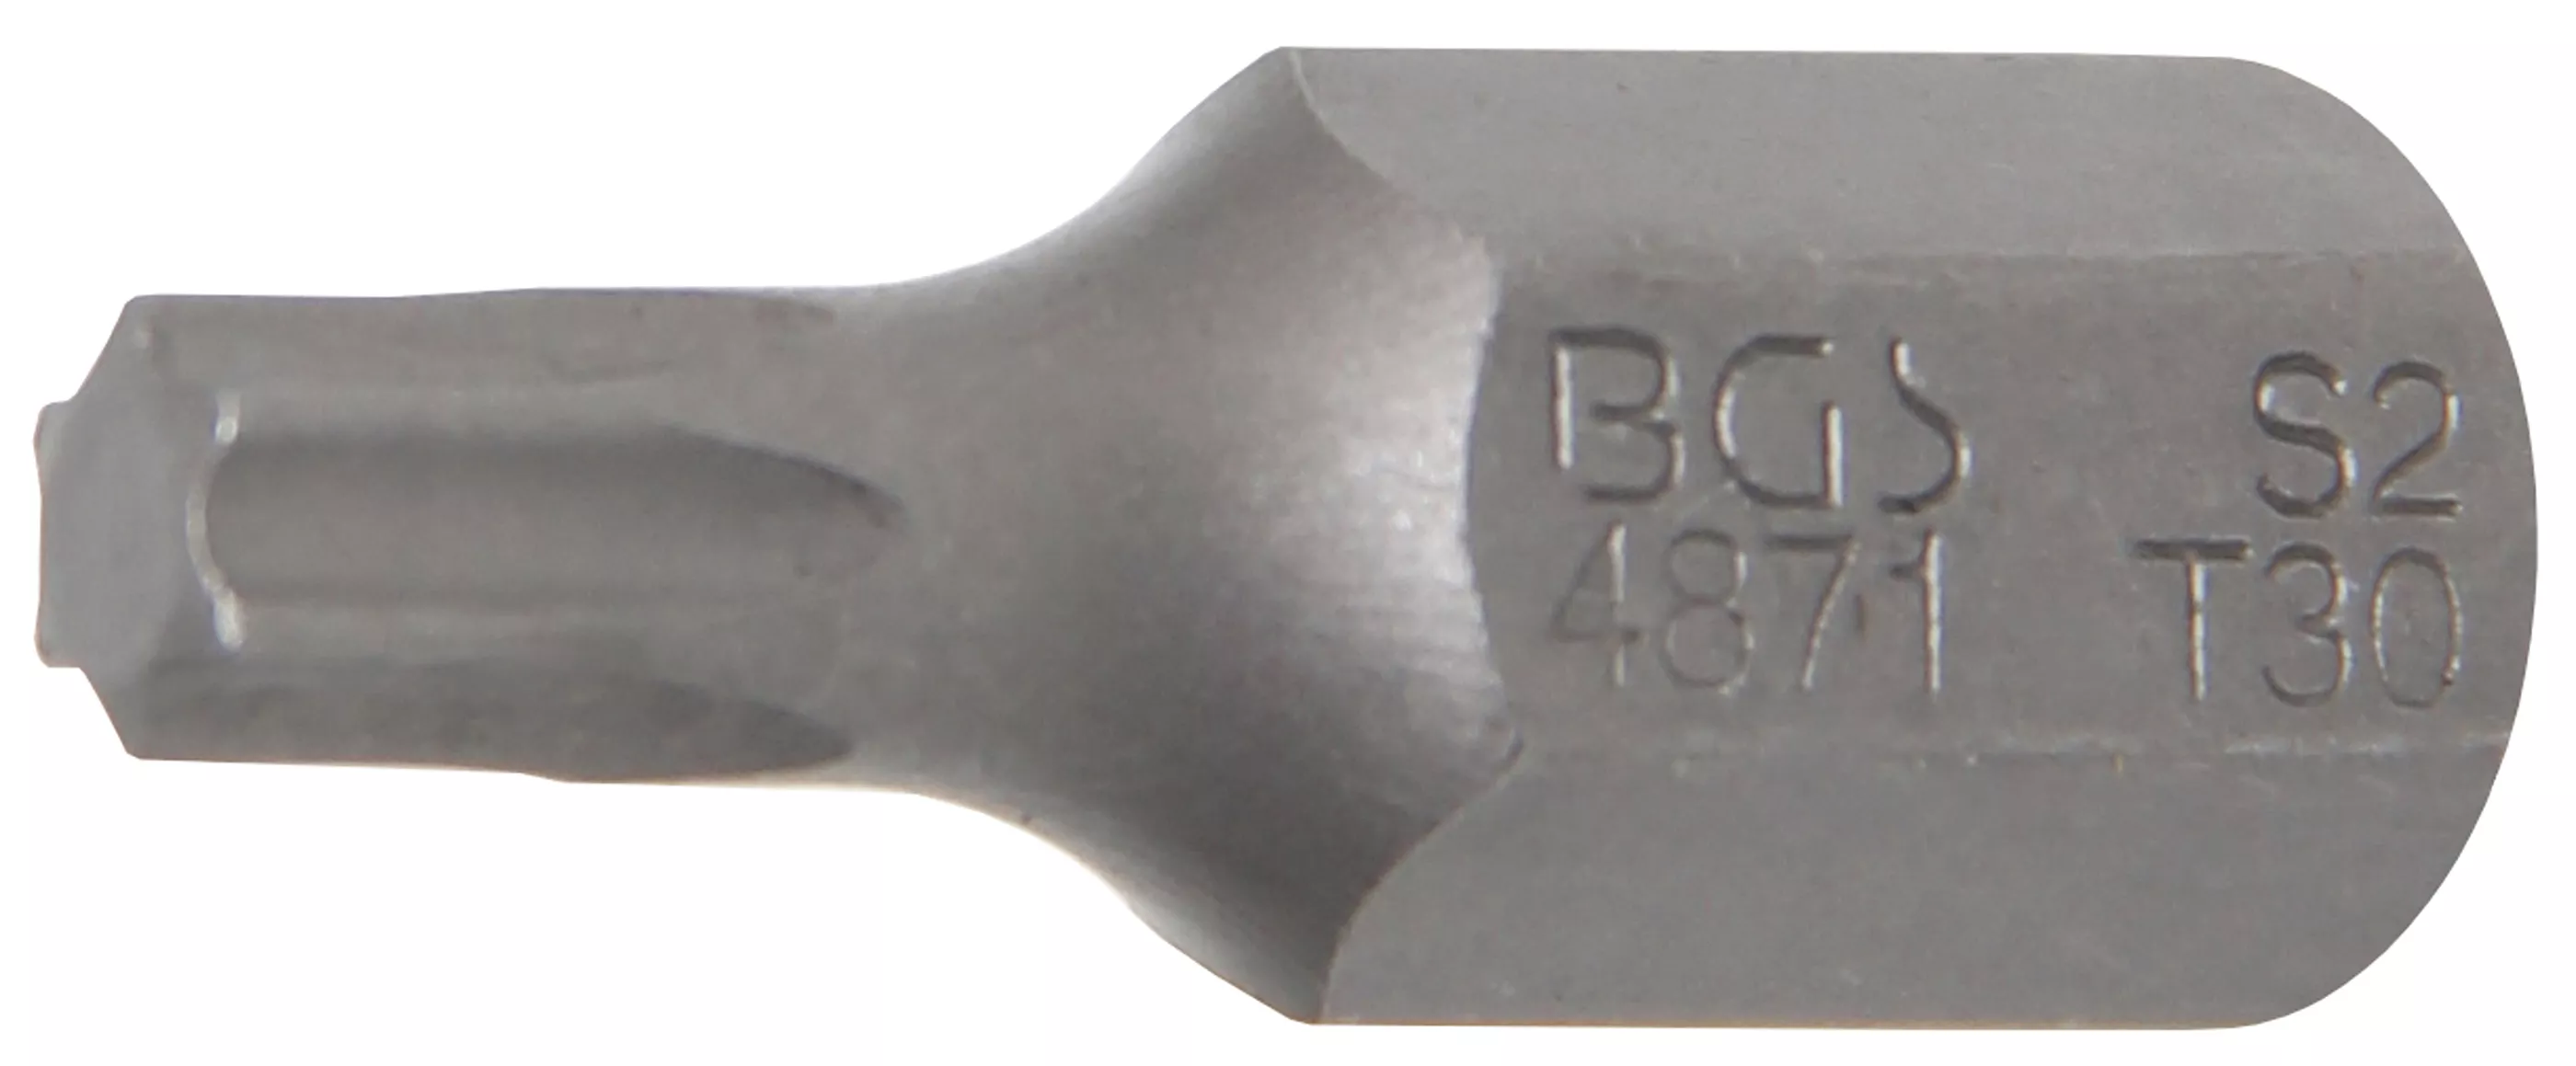 Bit, Torx, T30, 30 mm - B4871